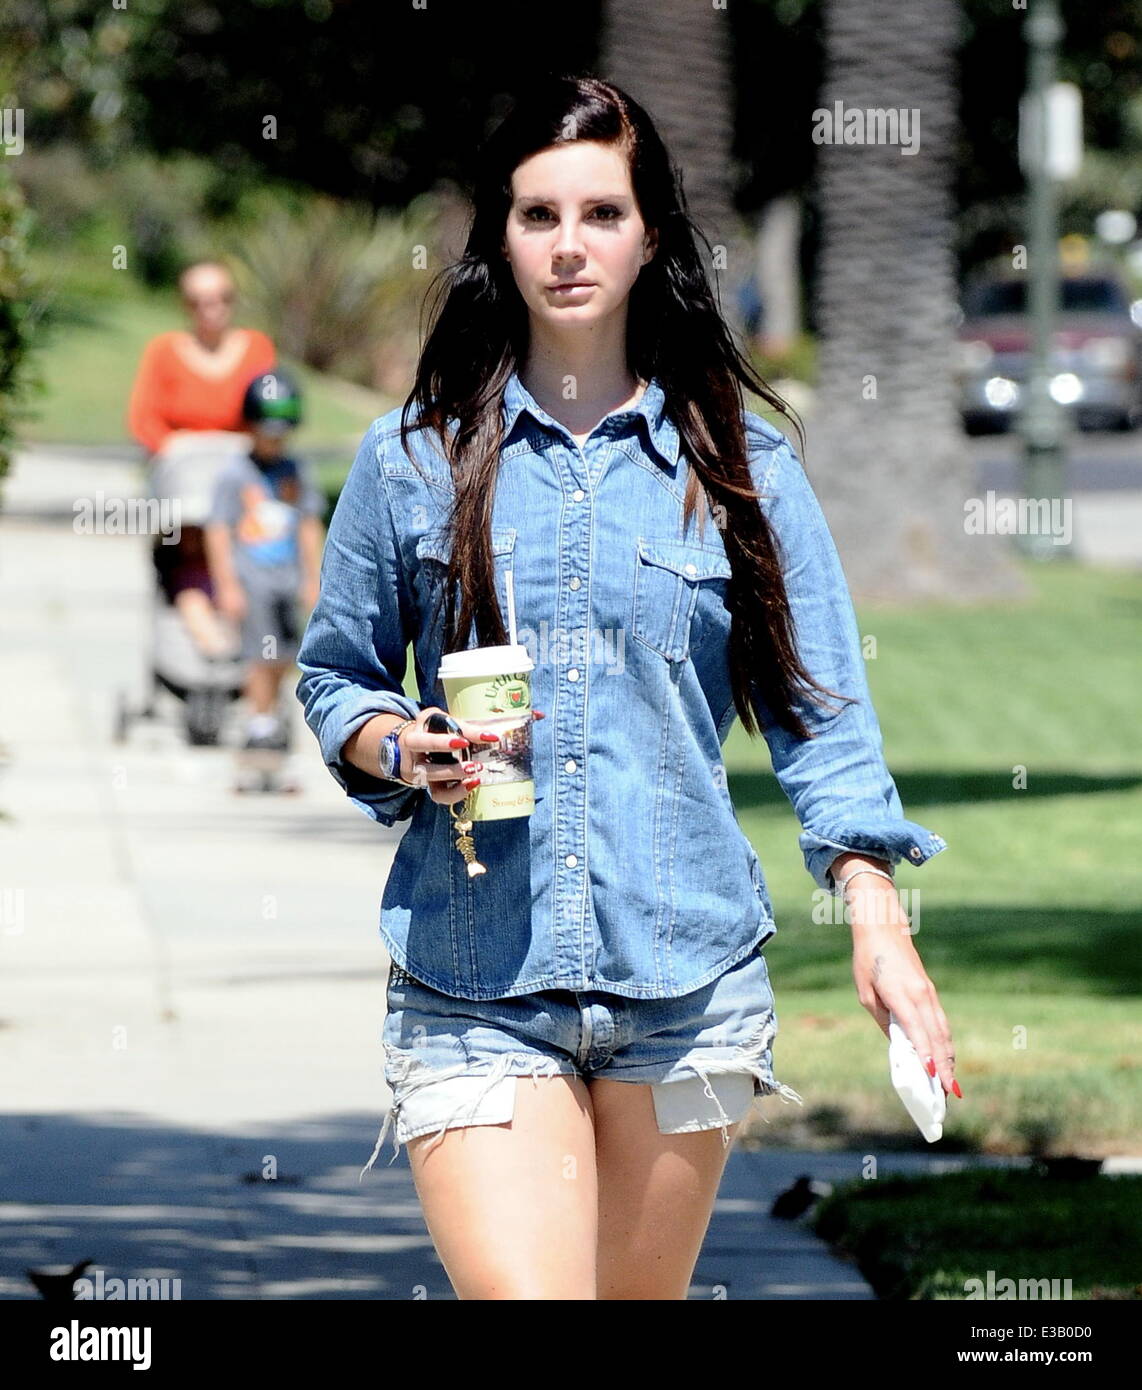 Lana Del Rey walking around Larchmont Village wearing a denim shirt and  matching Daisy Duke-style